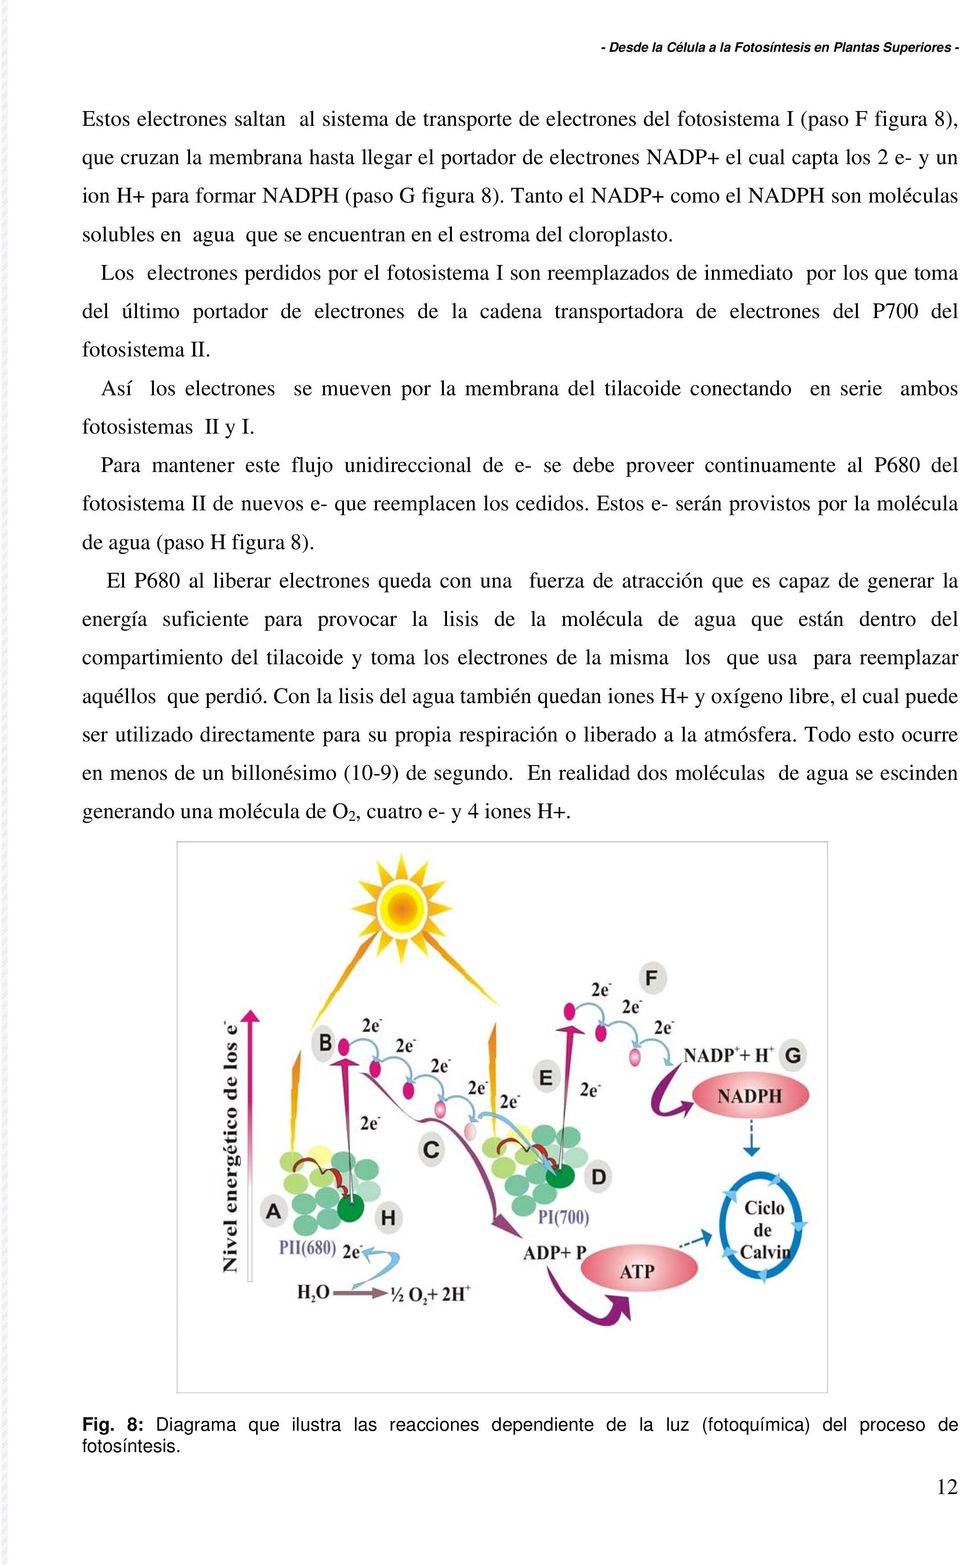 Los electrones perdidos por el fotosistema I son reemplazados de inmediato por los que toma del último portador de electrones de la cadena transportadora de electrones del P700 del fotosistema II.